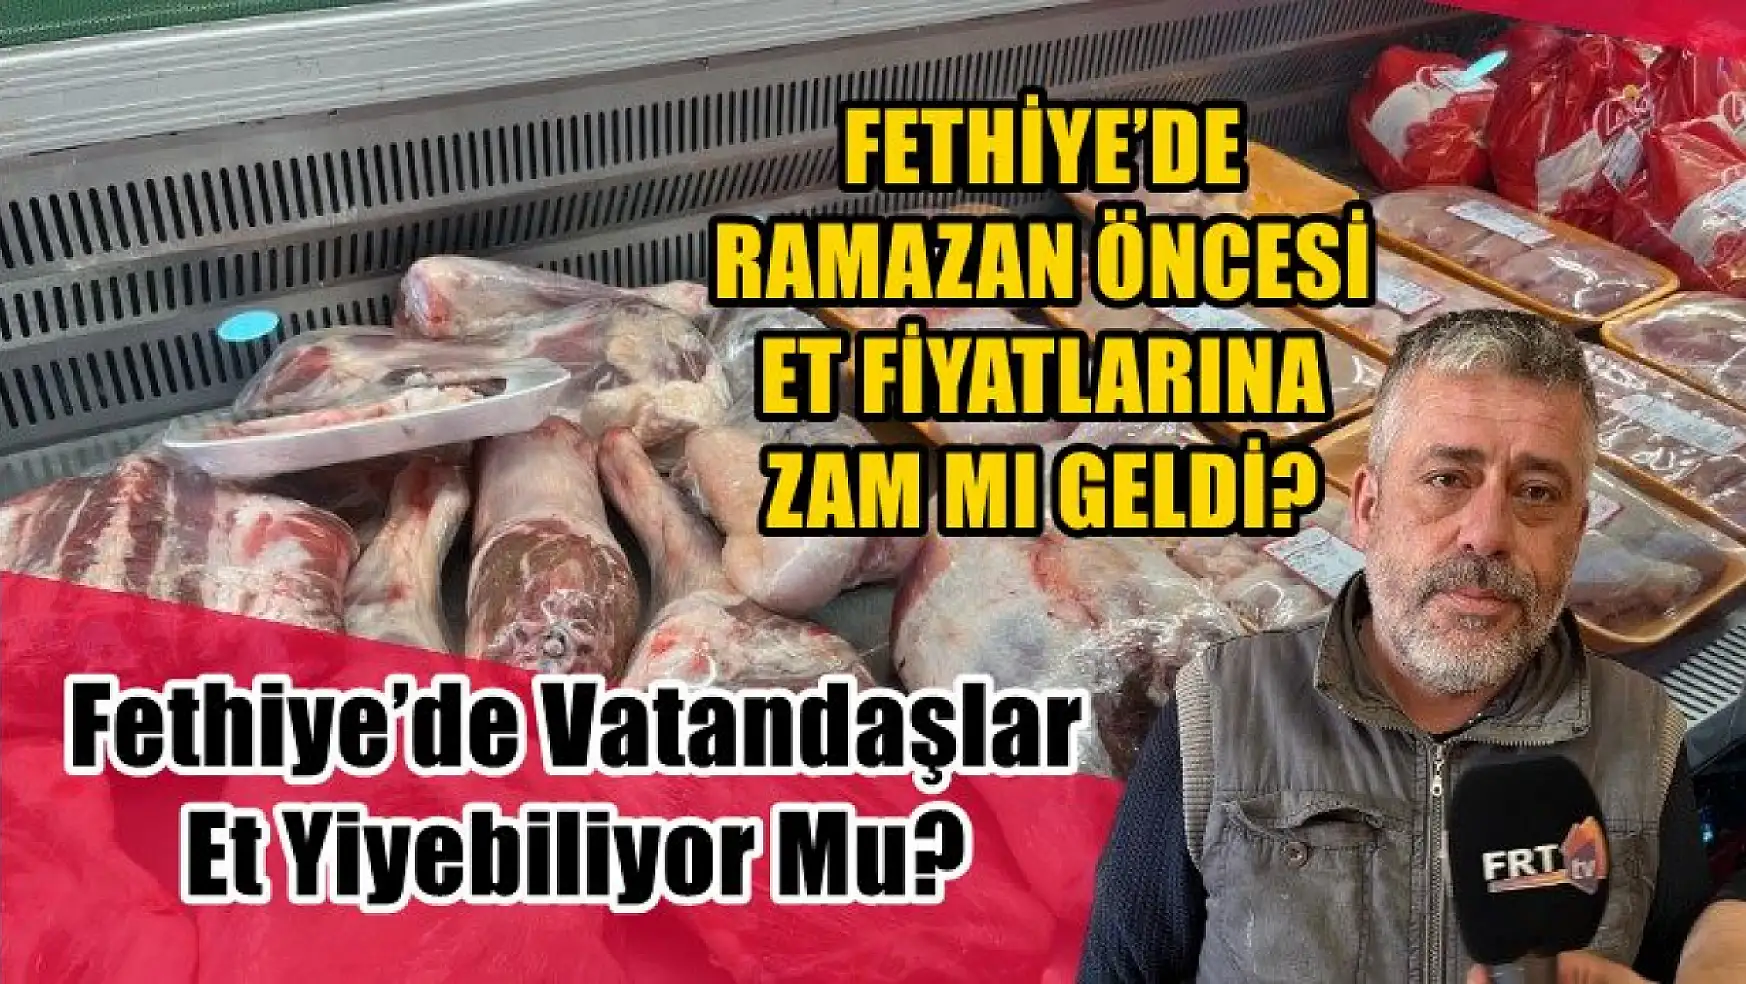 Fethiye'de Ramazan öncesi et fiyatlarına zam mı geldi? Fethiye'de vatandaşlar et yiyebiliyor mu?